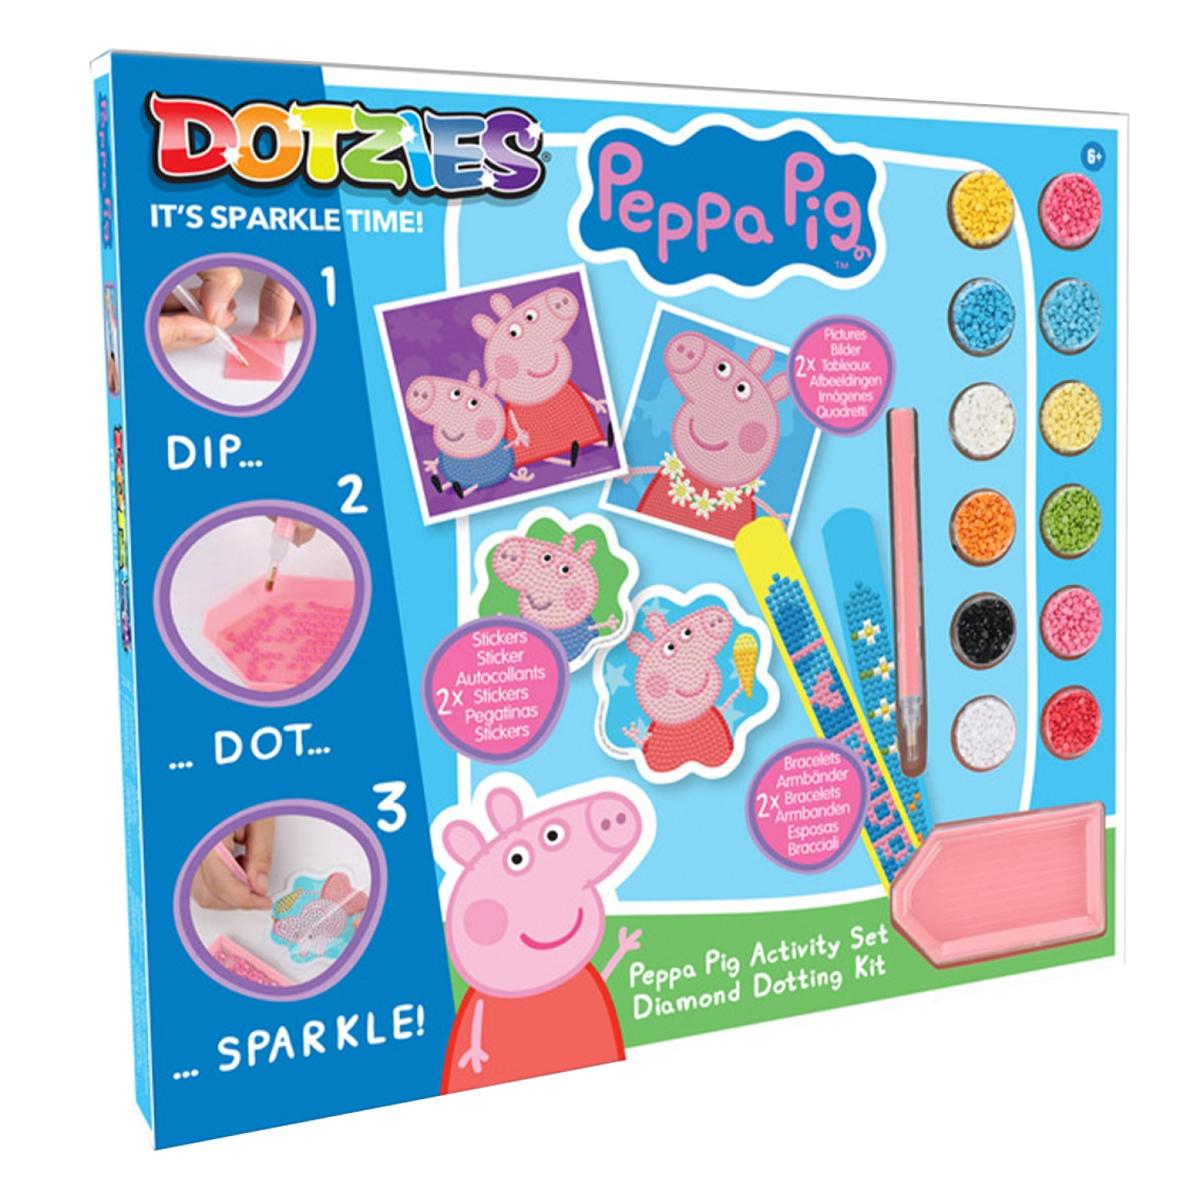 Diamond Dotz Peppa Pig activity set